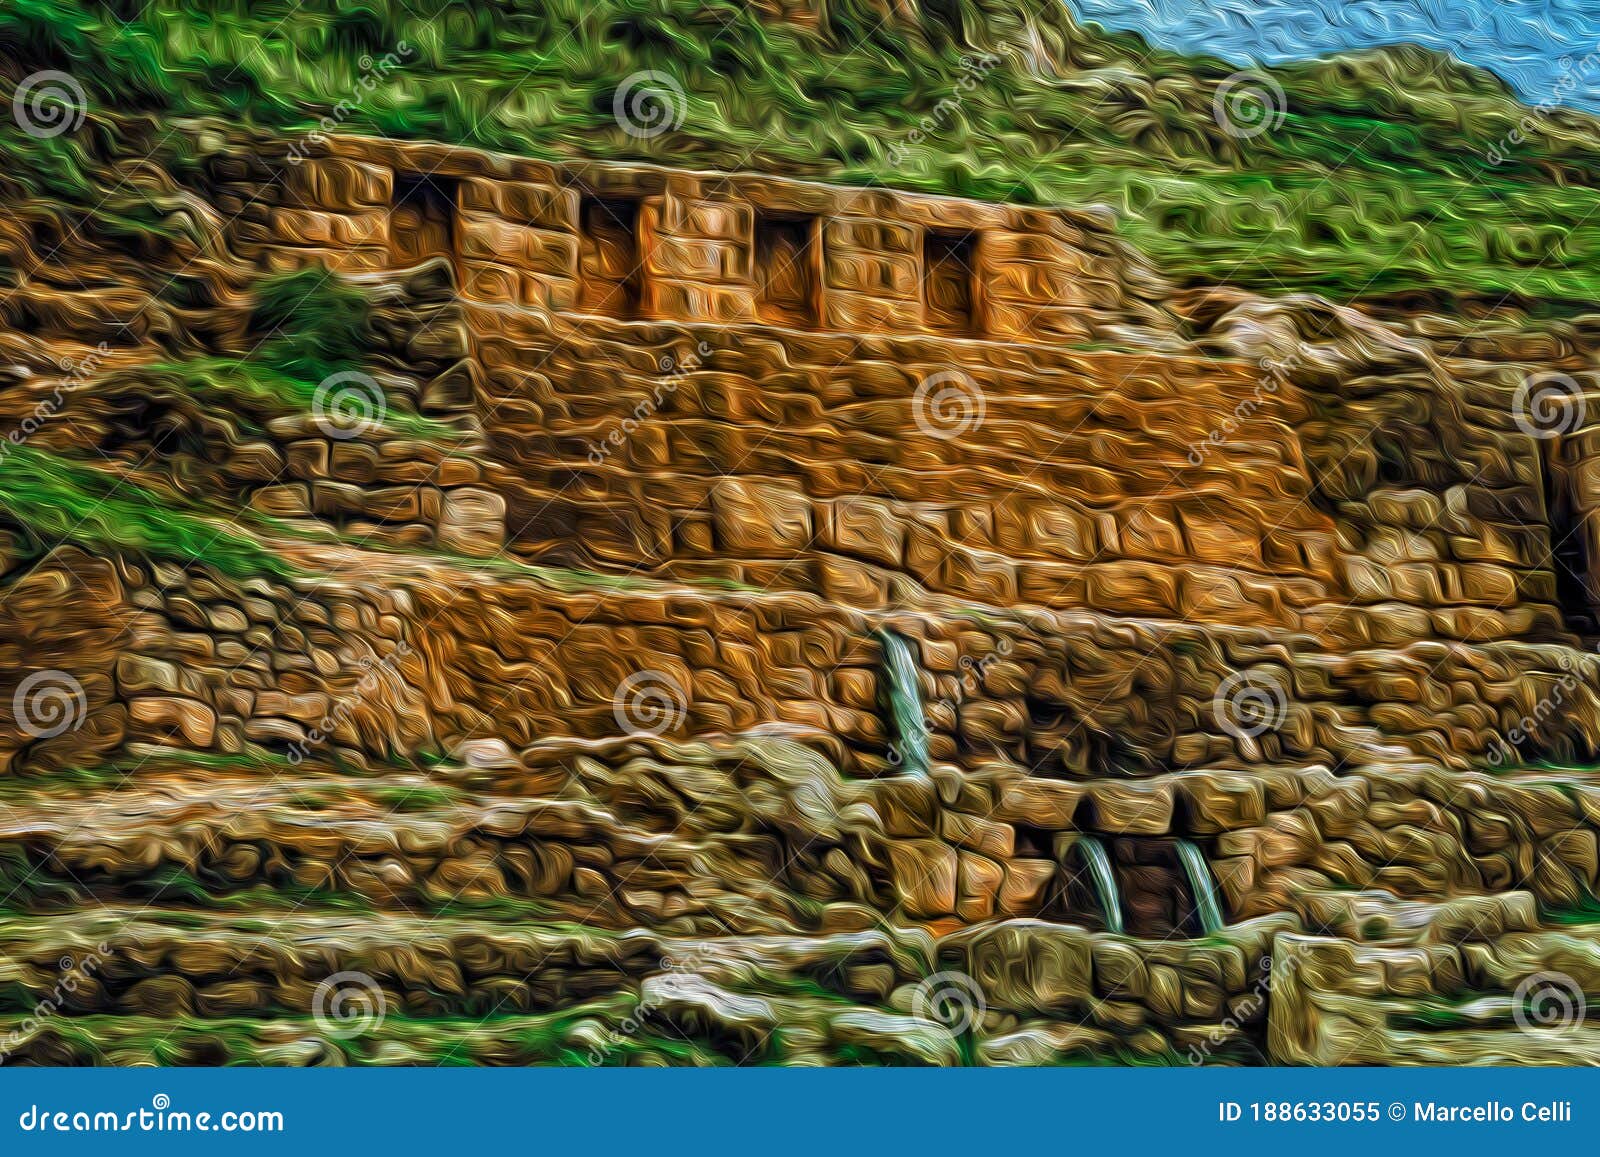 inca stone ruins and fount at tambomachay